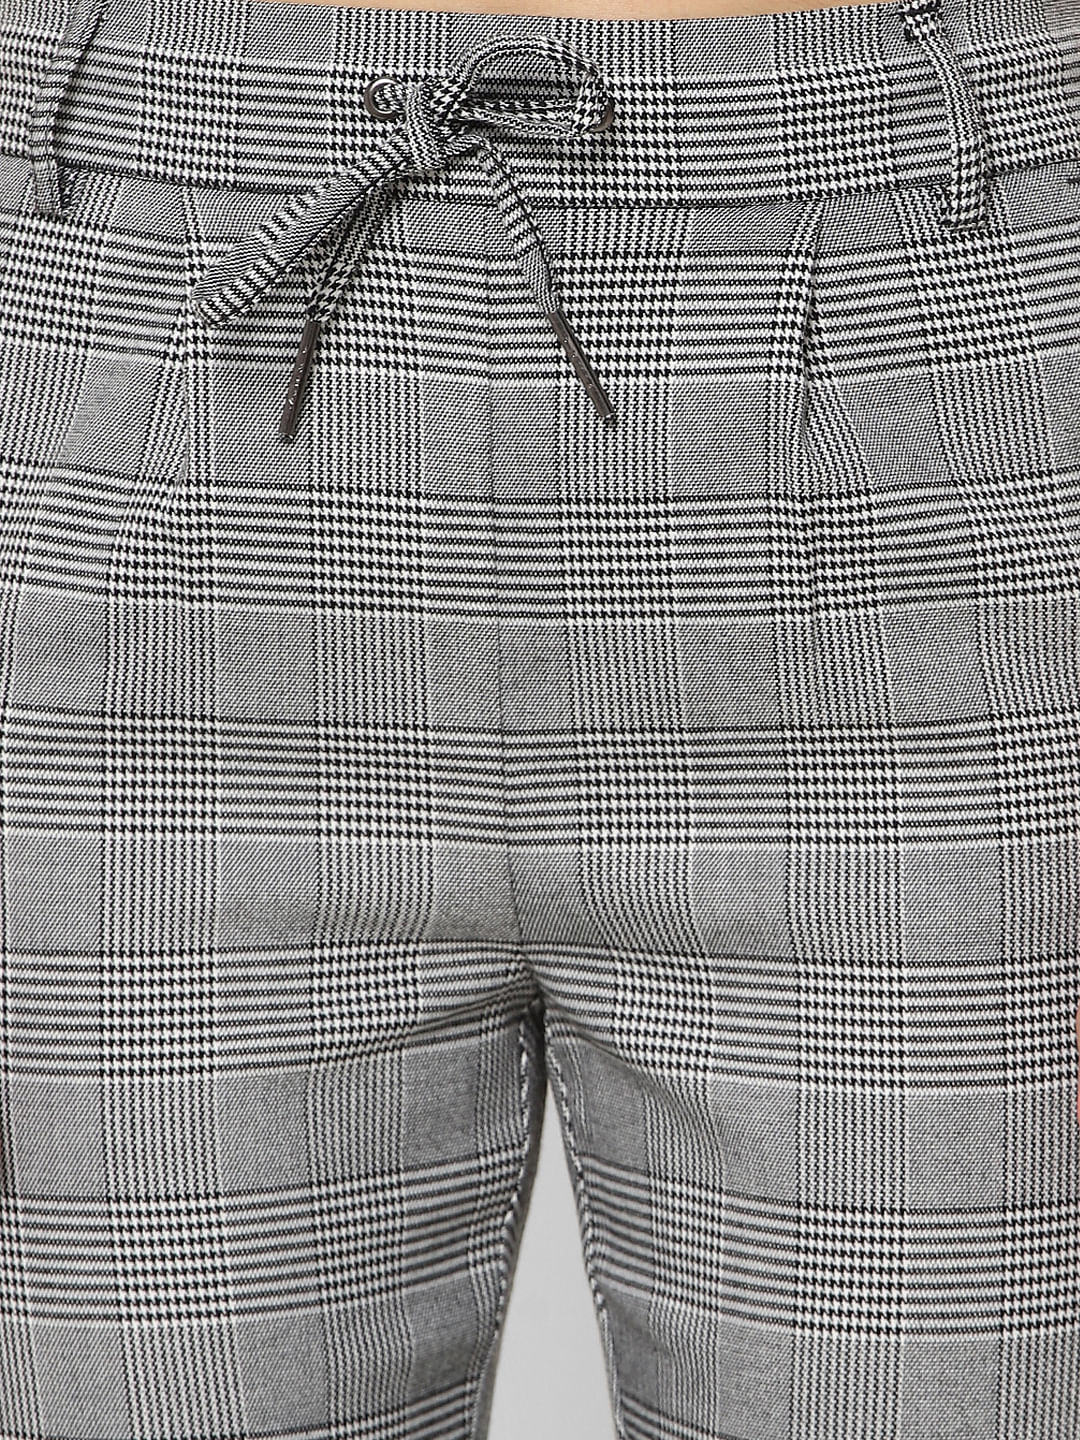 Urban Ranger by Pantaloons Black Cotton Slim Fit Checks Trousers